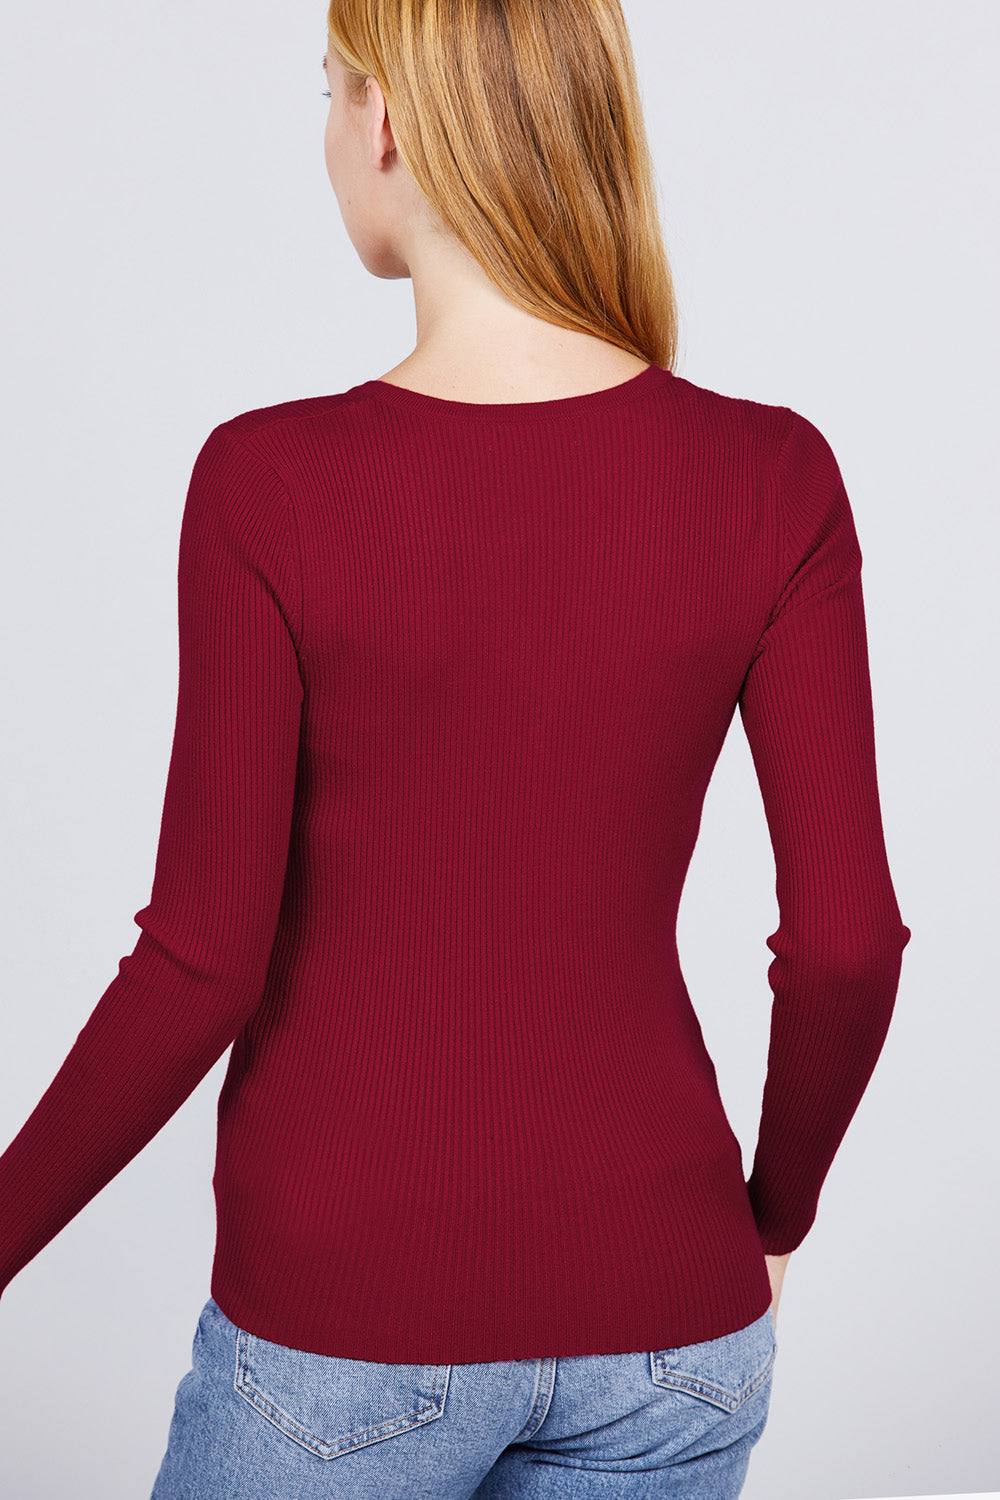 Women's Viscose Henley Sweater